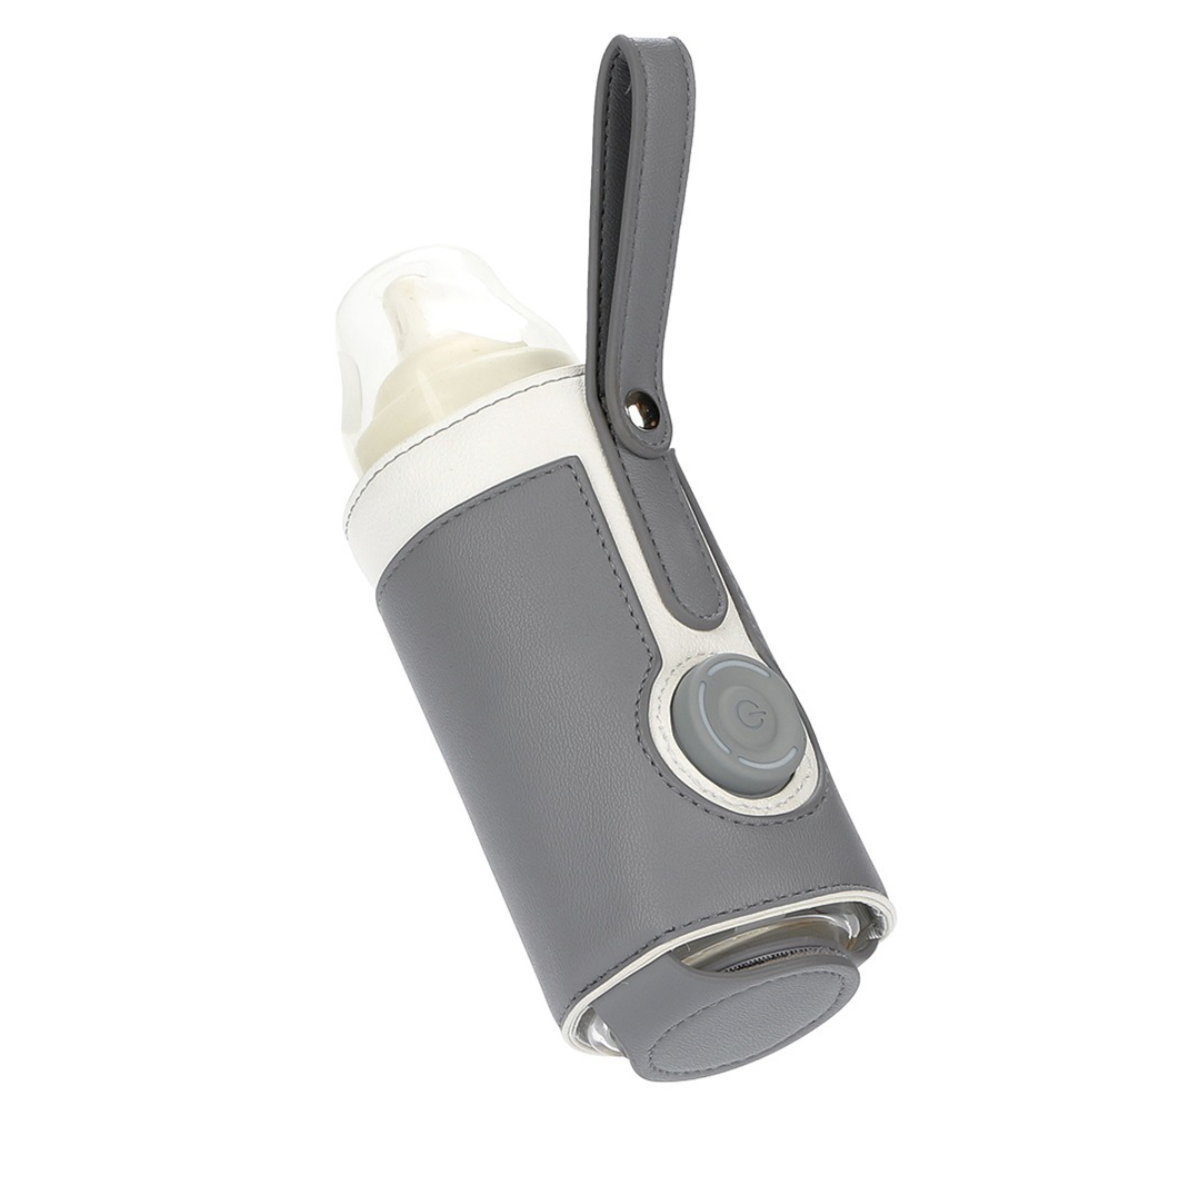 UWOT Smart Thermal Bottle Cover: einfach&praktisch-5V Tragbar&elegant, Grau sicher&kontrollierbar, Babykostwärmer